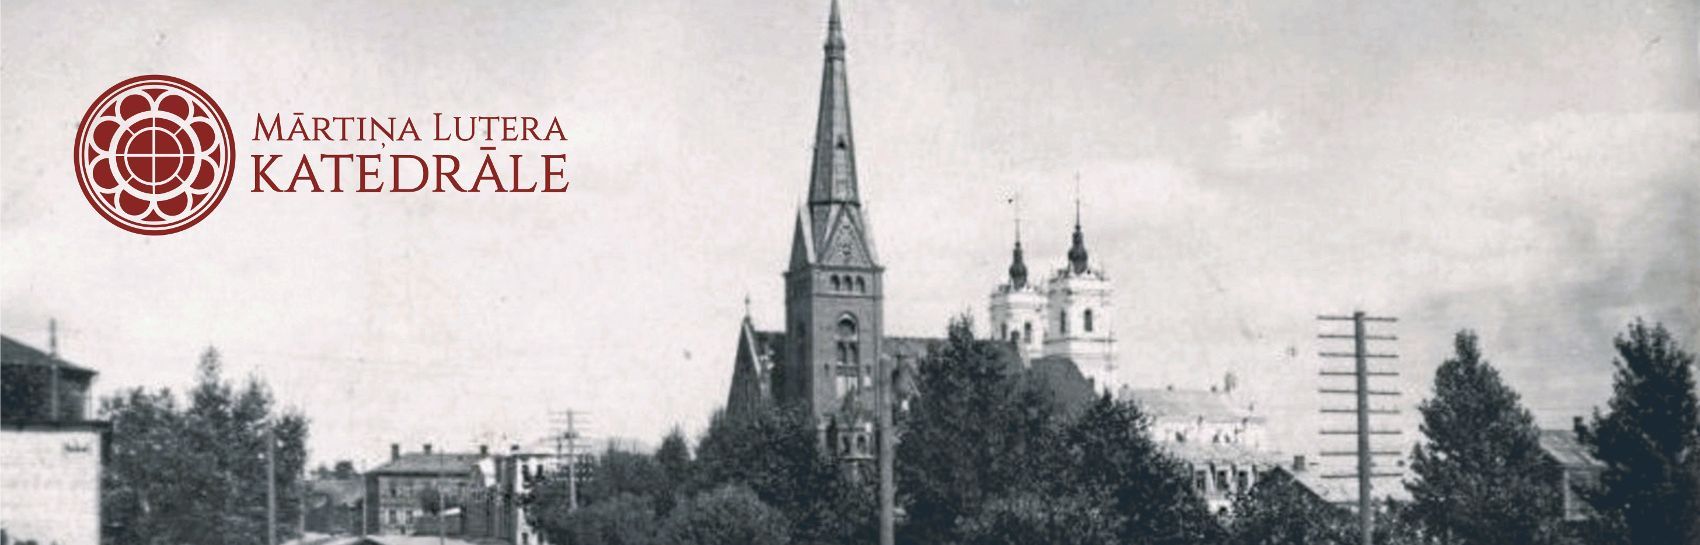 Daugavpils Mārtiņa Lutera katedrāle - dievnama vēsture